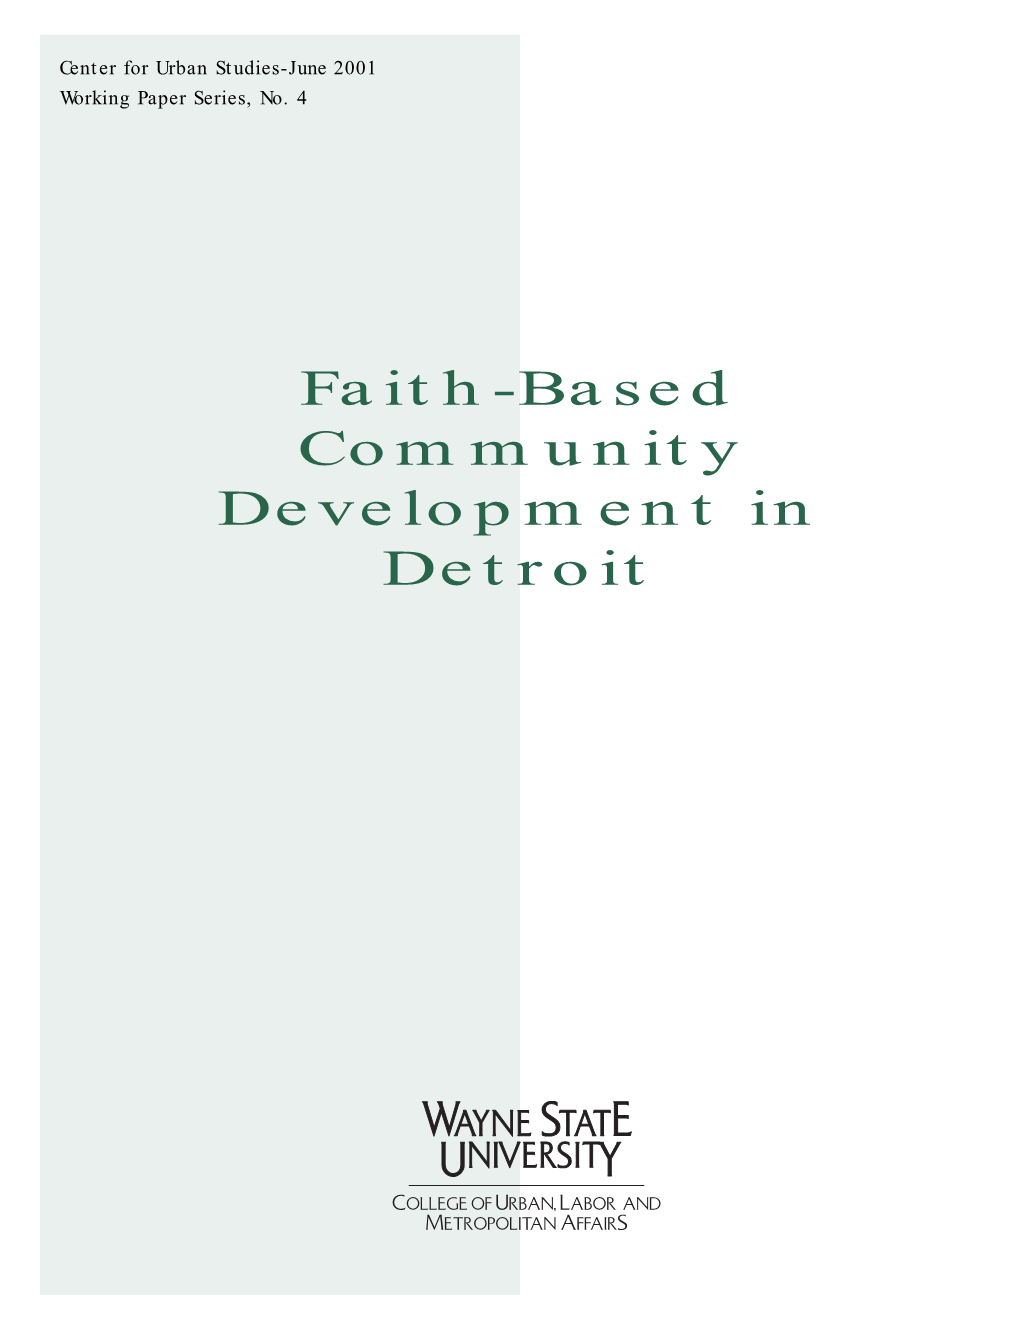 Faith-Based Community Development in Detroit